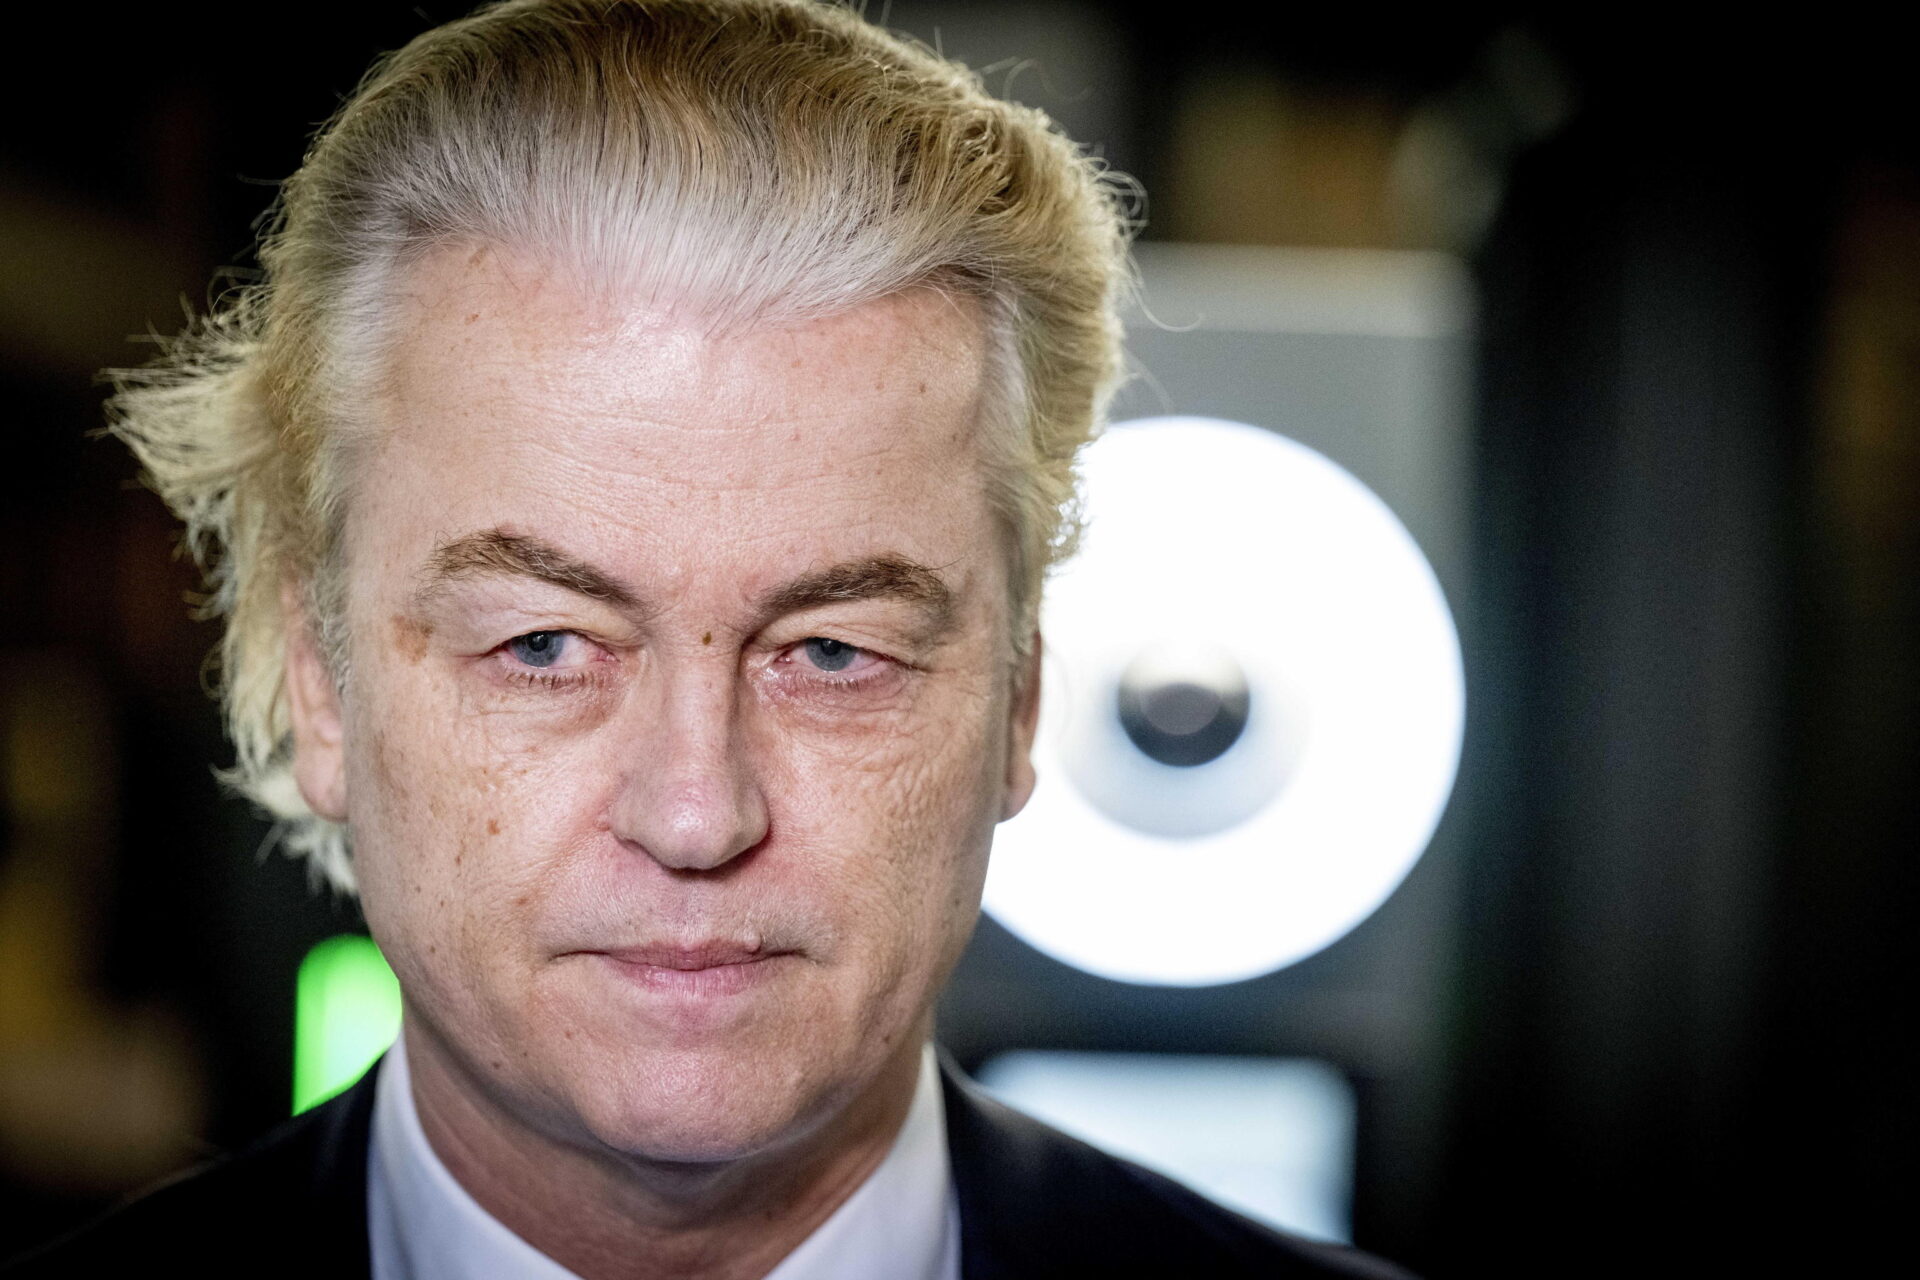 L’islamofobo Wilders contro le condoglianze europee a Raisi: “Solidarietà col male”